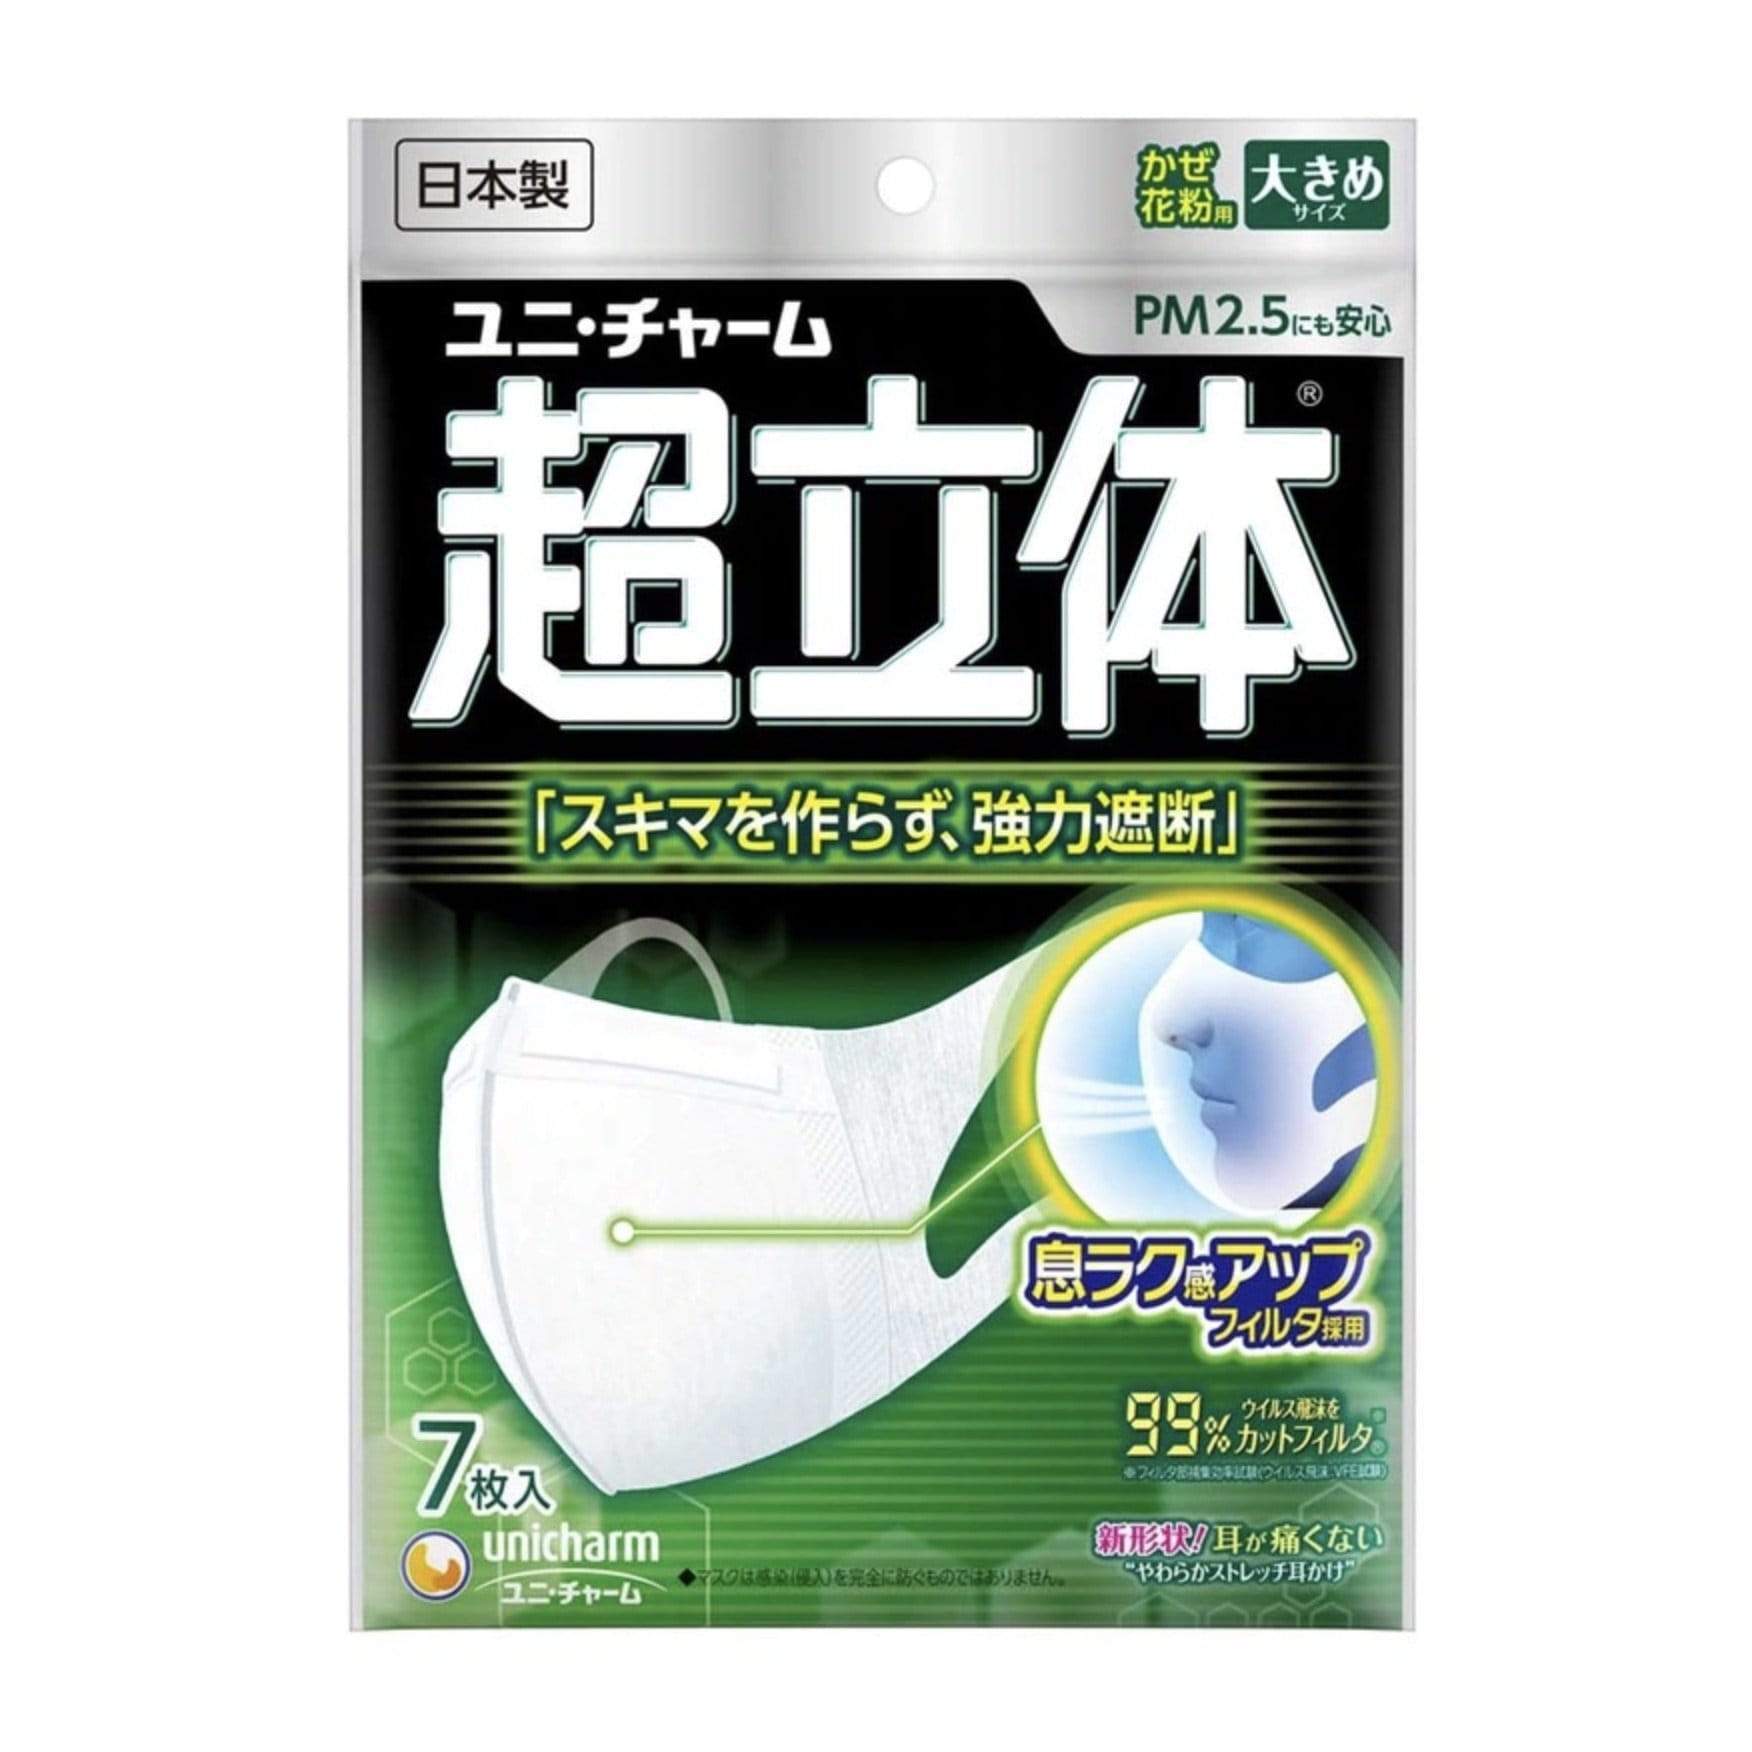 Helms Store Masks Unicharm Japan (超立体®) Large 3D Adults Disposable Face Masks